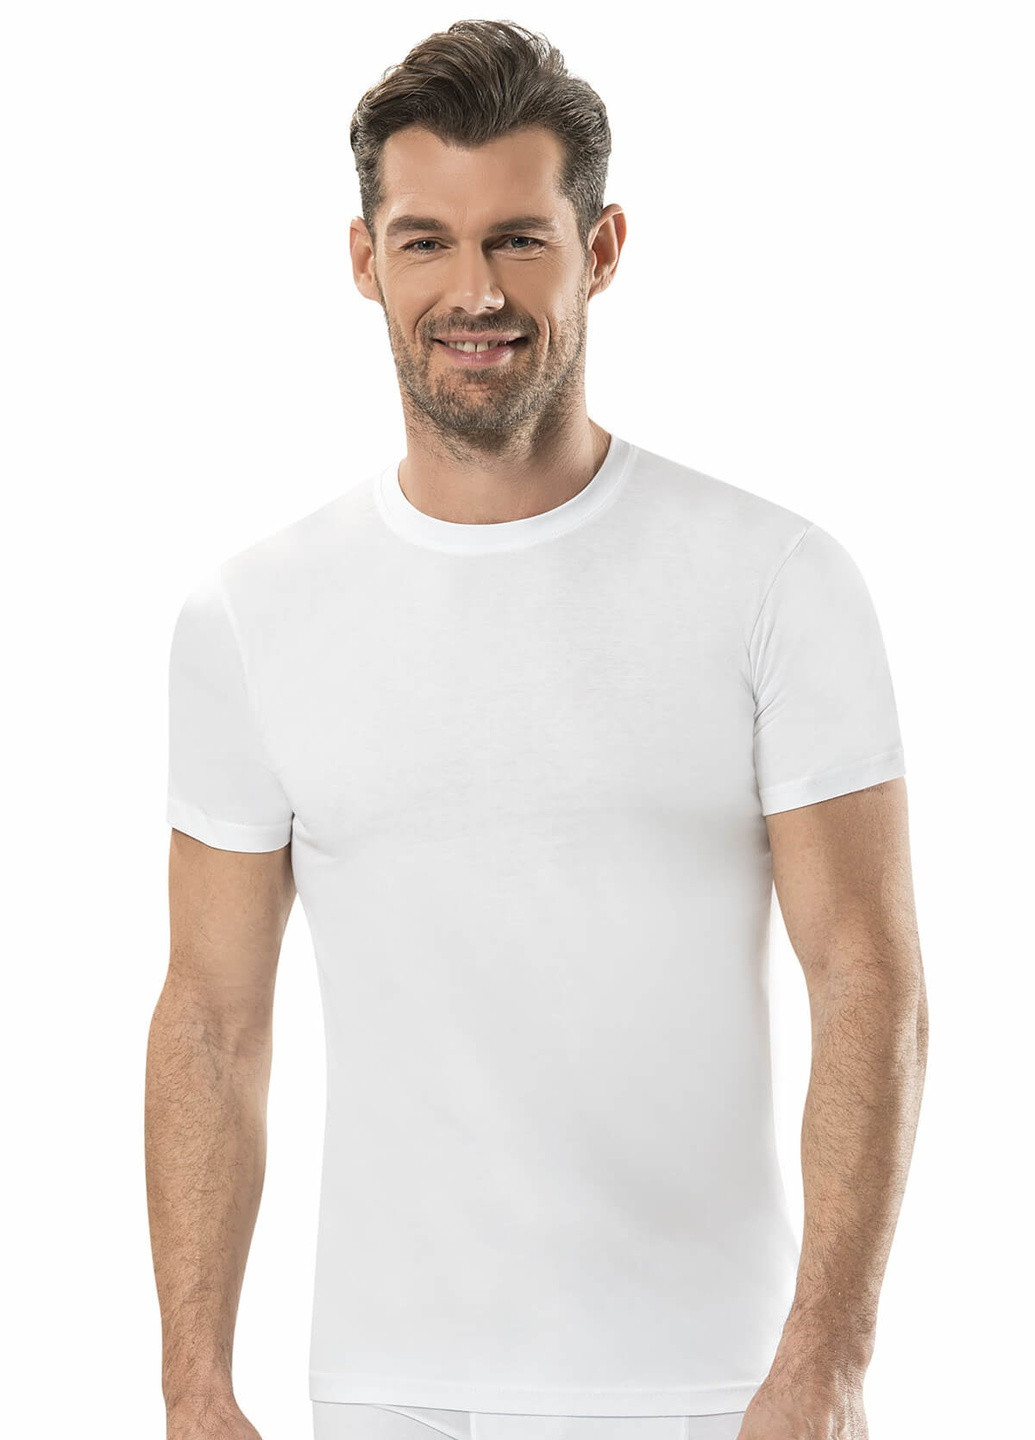 Біла футболка чоловіча арт.gray s Jiber 111